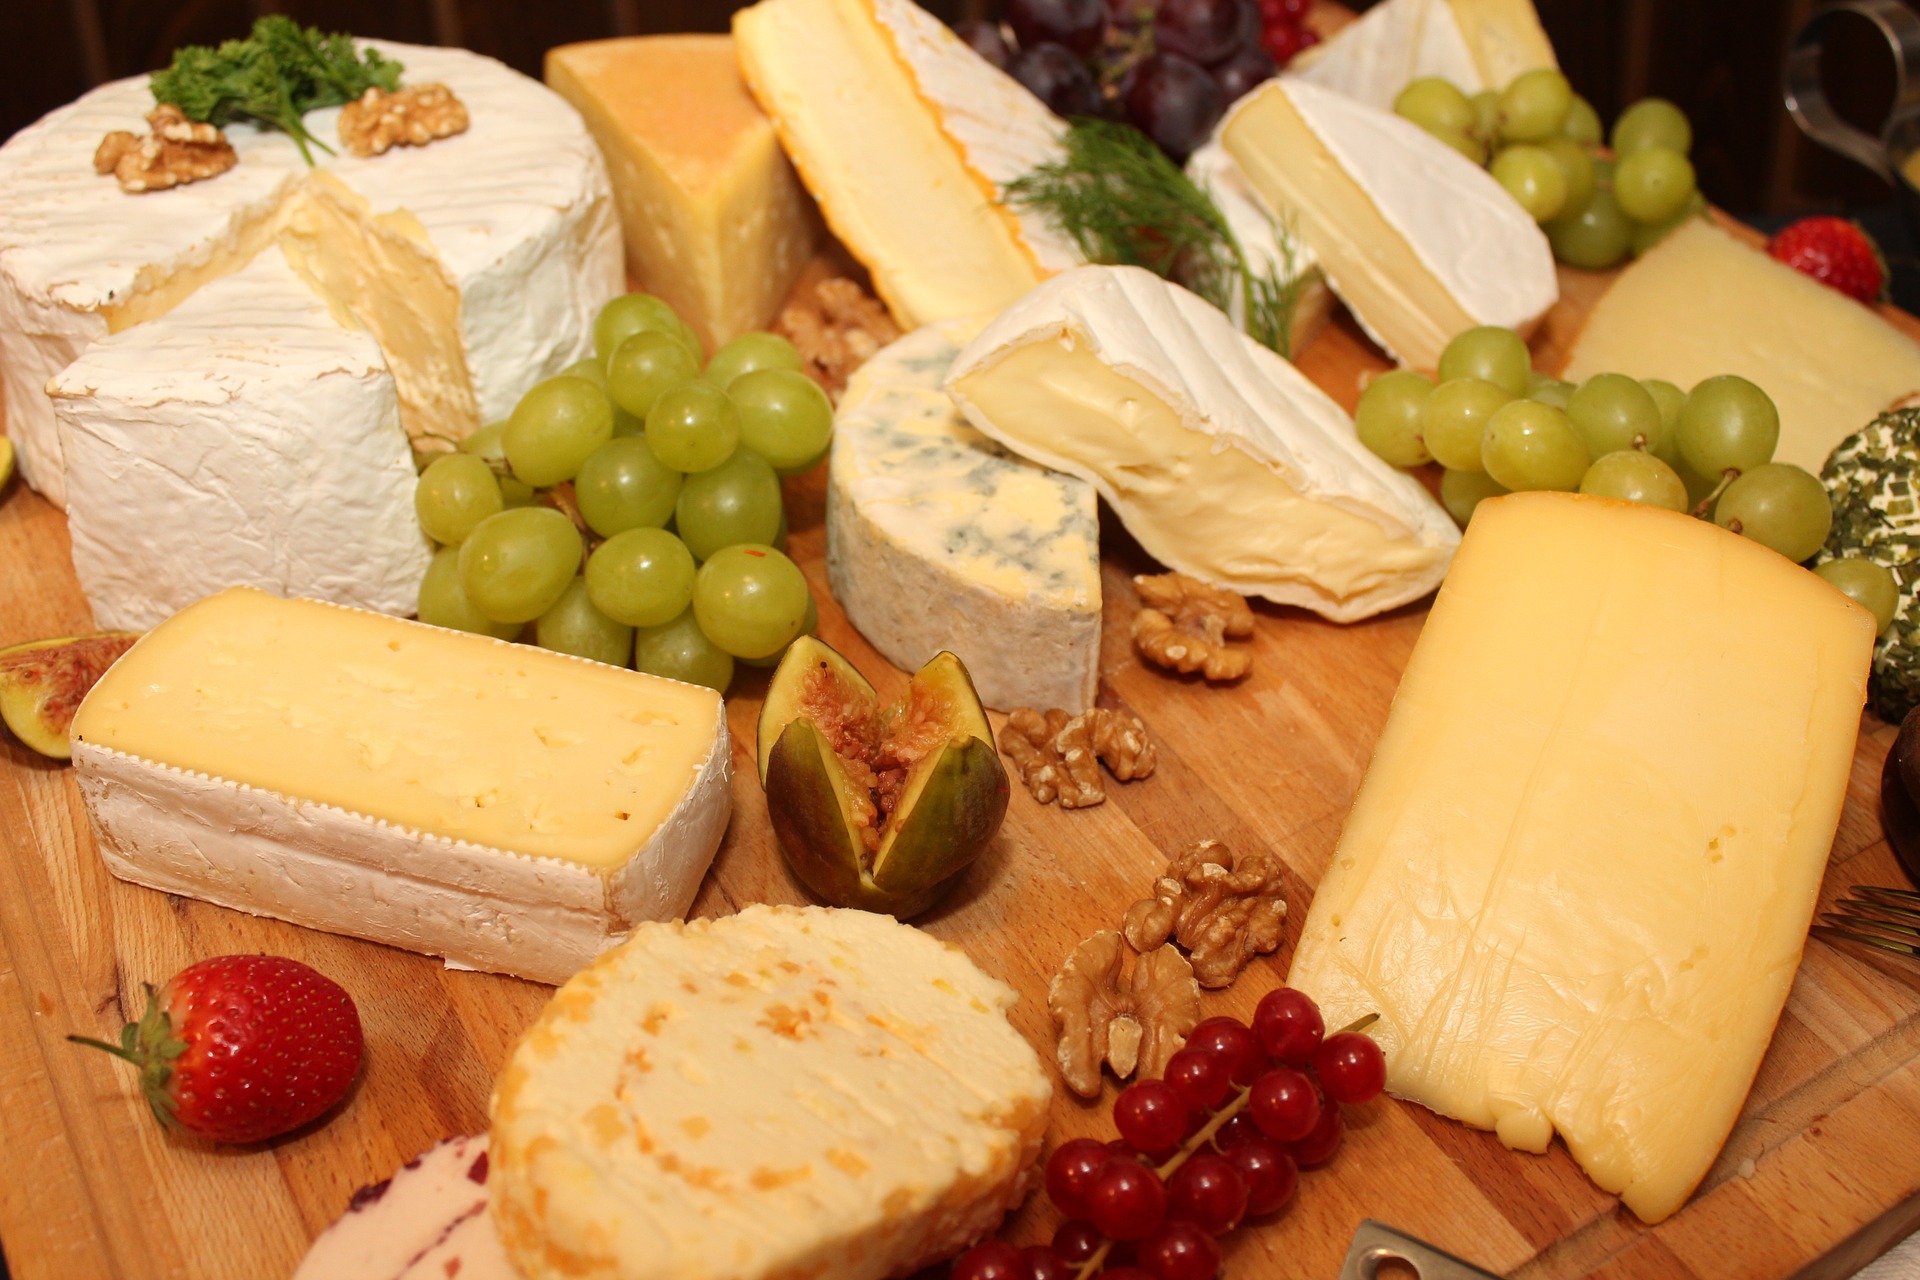 Pet ključnih znakova da biste trebali prestati jesti sir